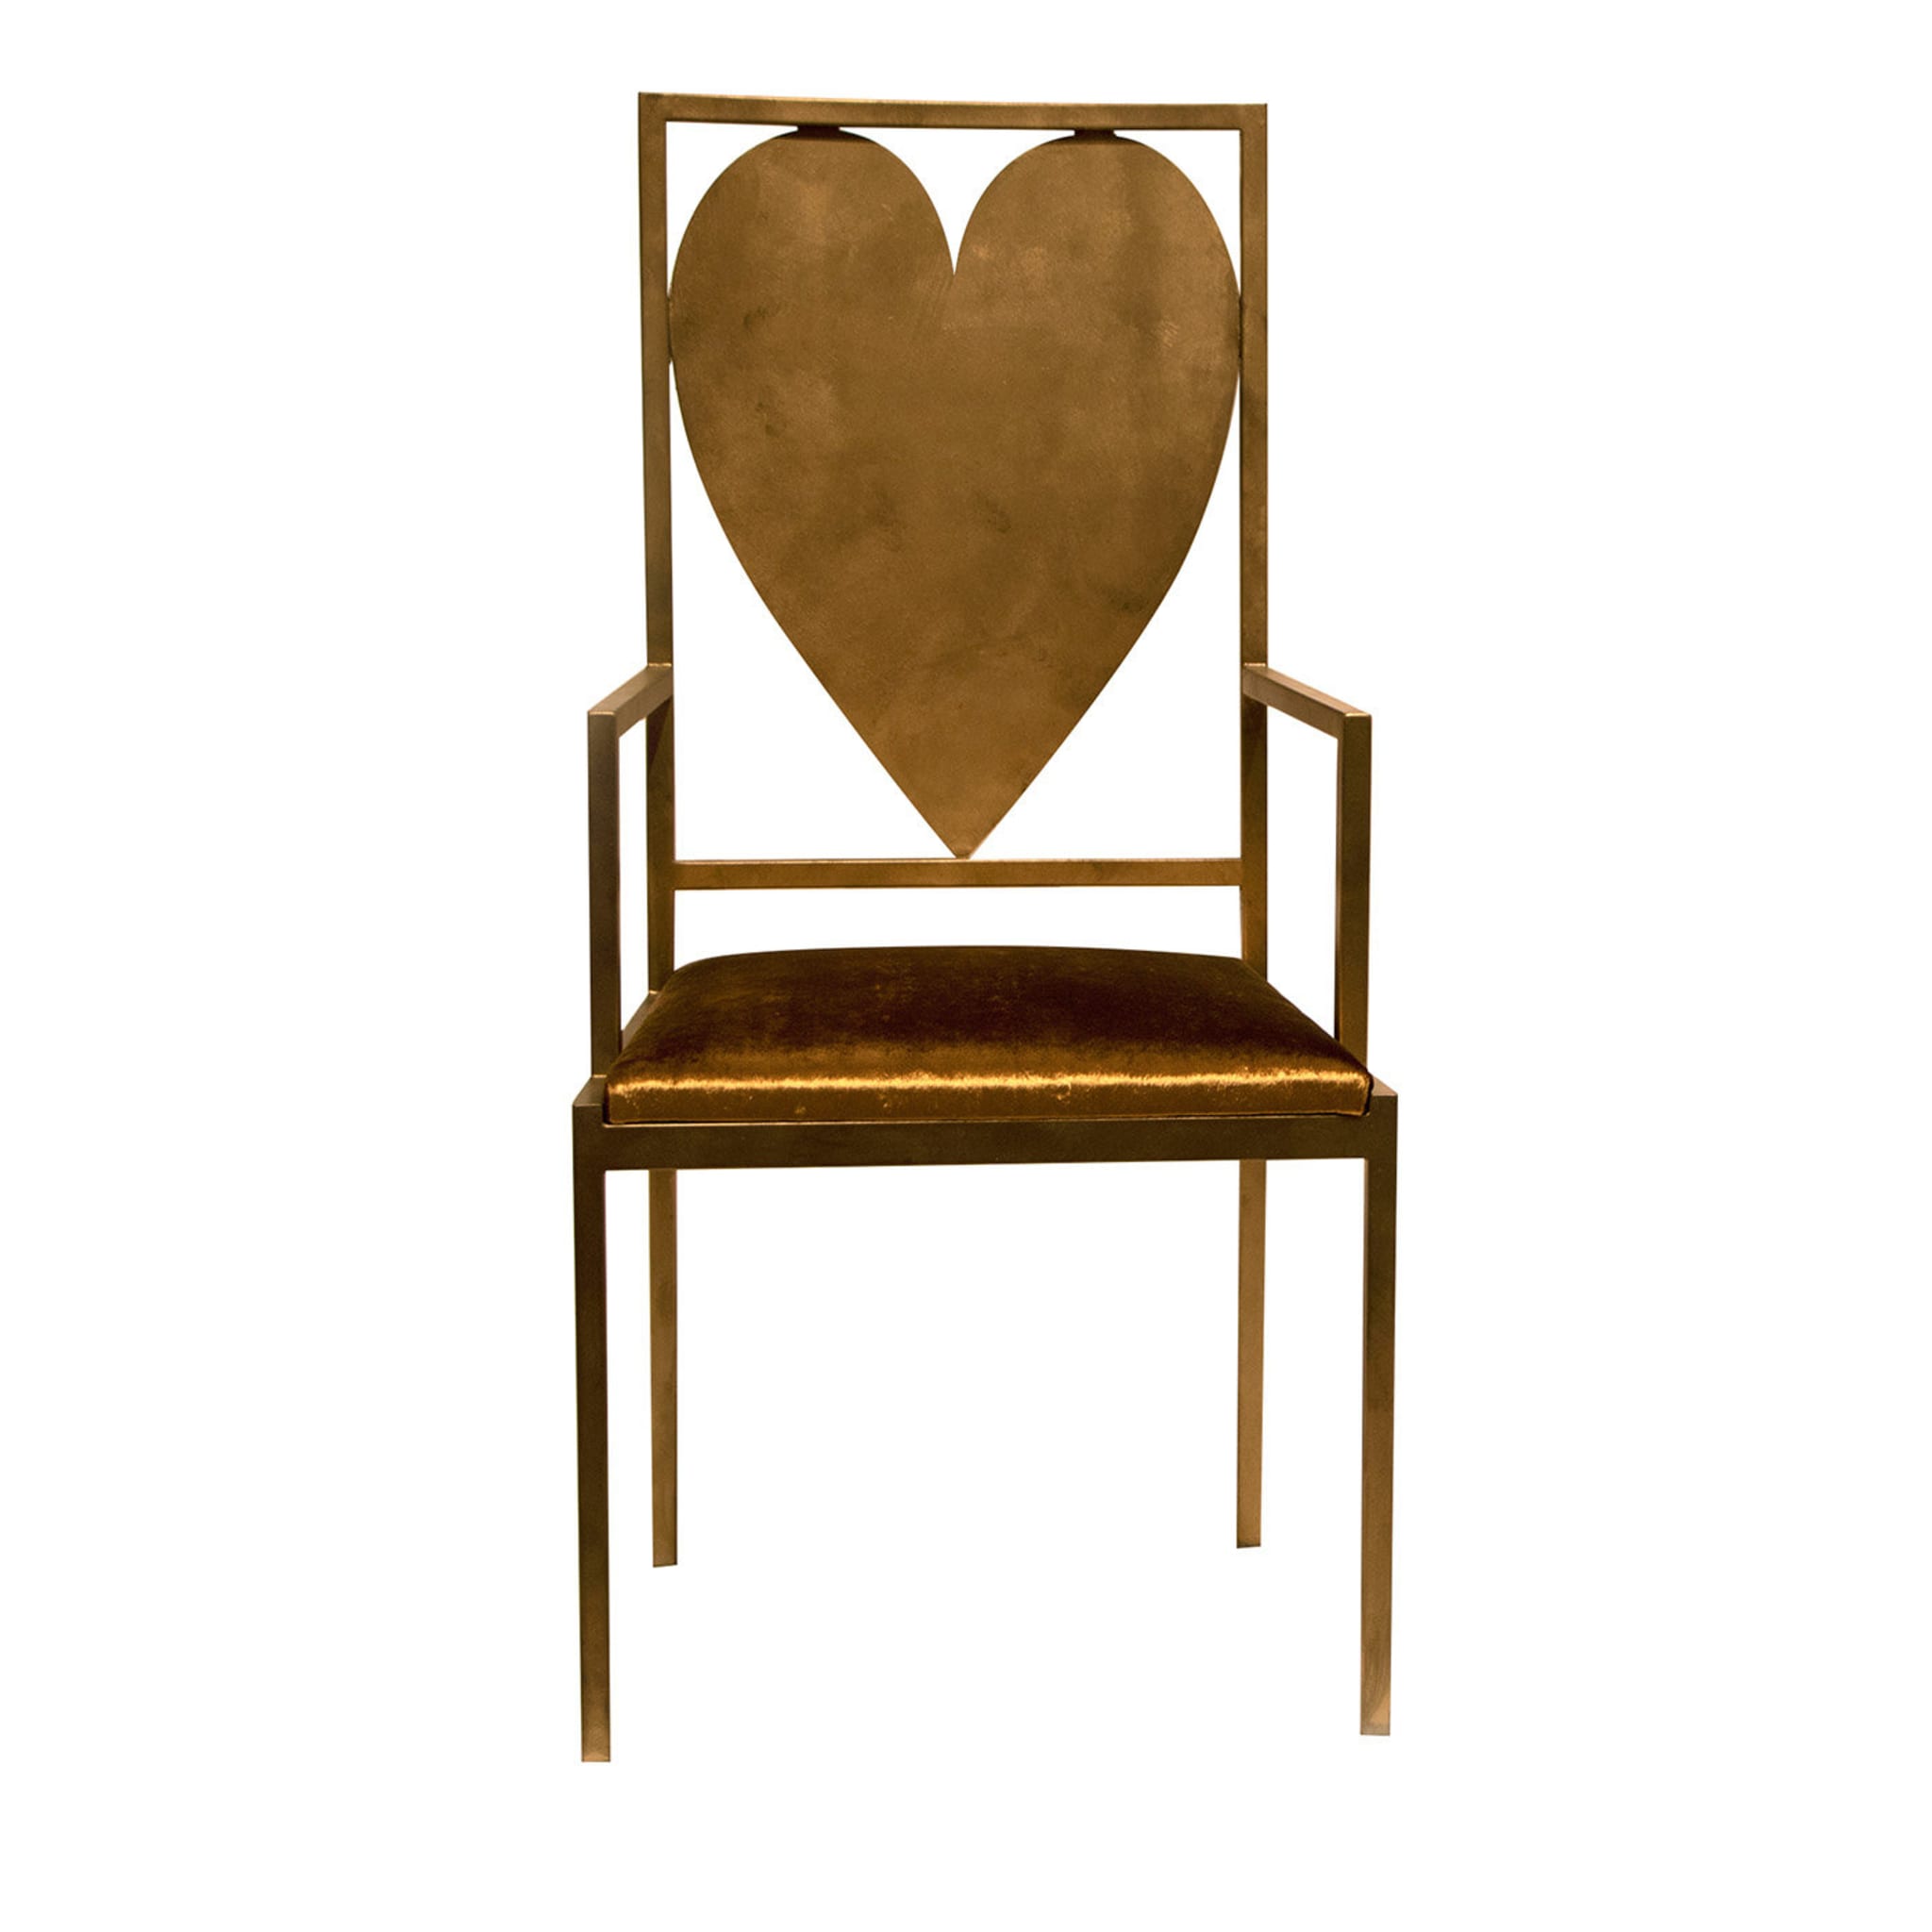 Heart Throne Chair - Main view